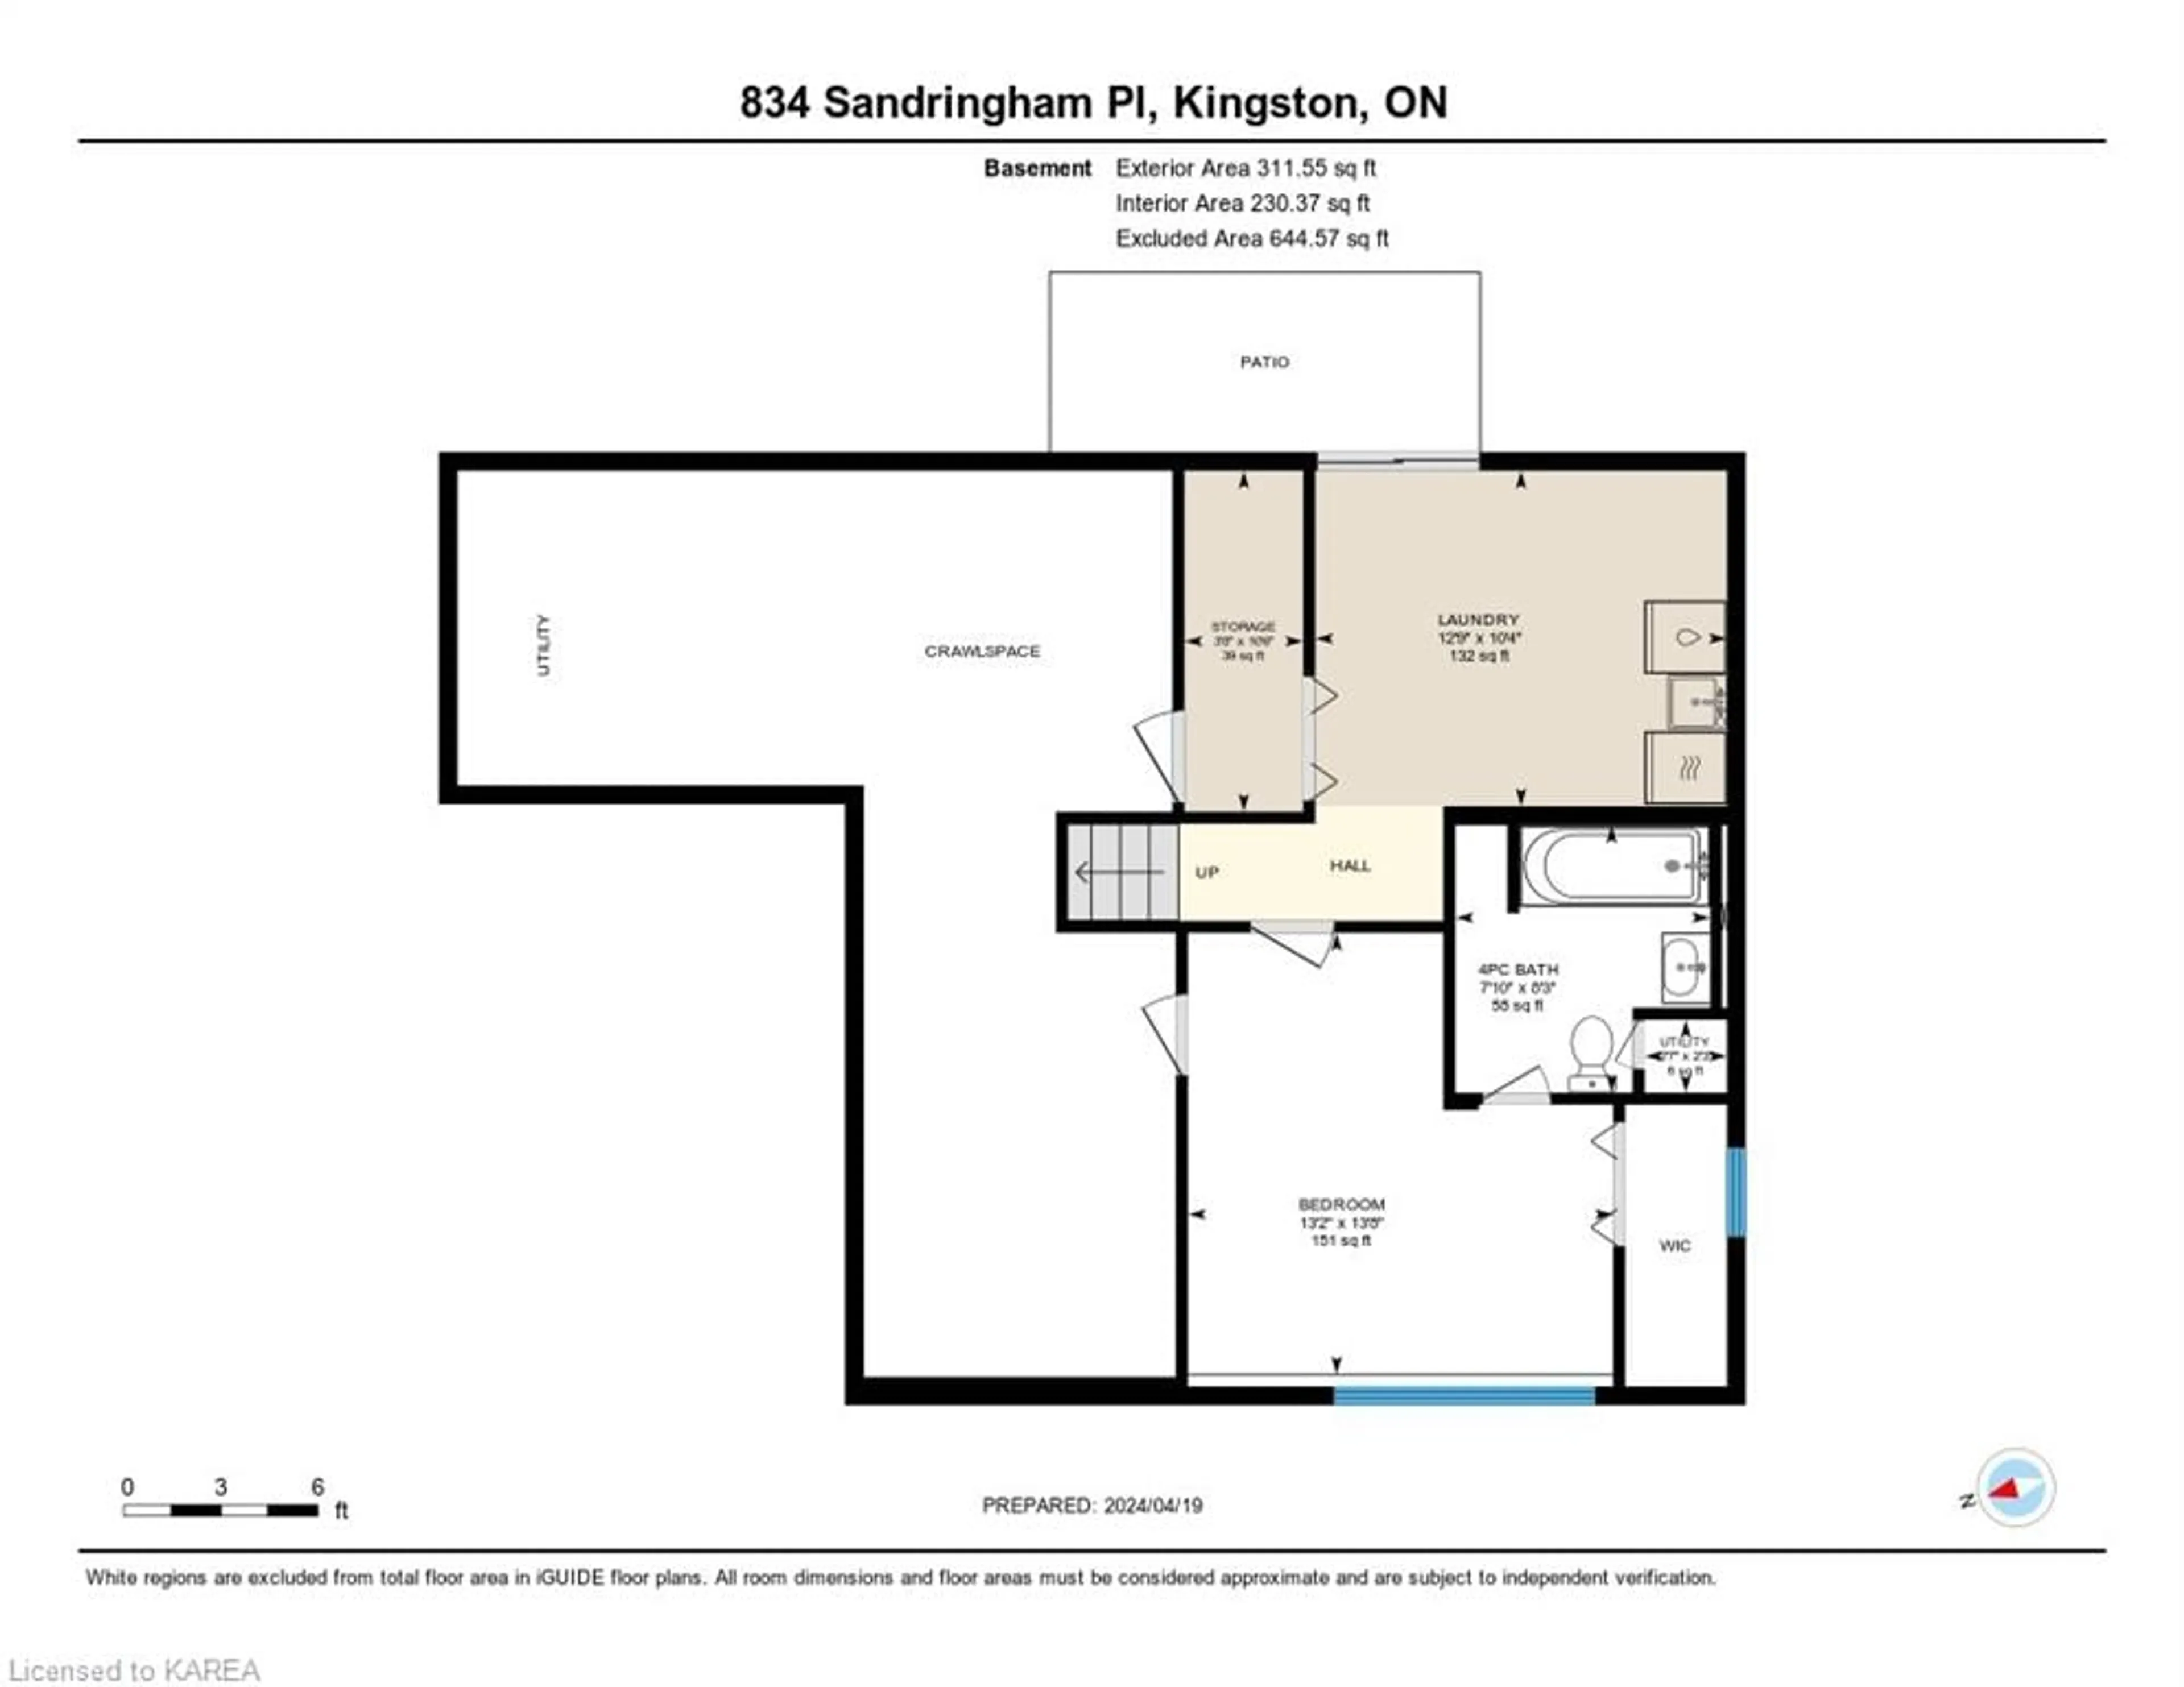 Floor plan for 834 Sandringham Pl, Kingston Ontario K7P 1N2